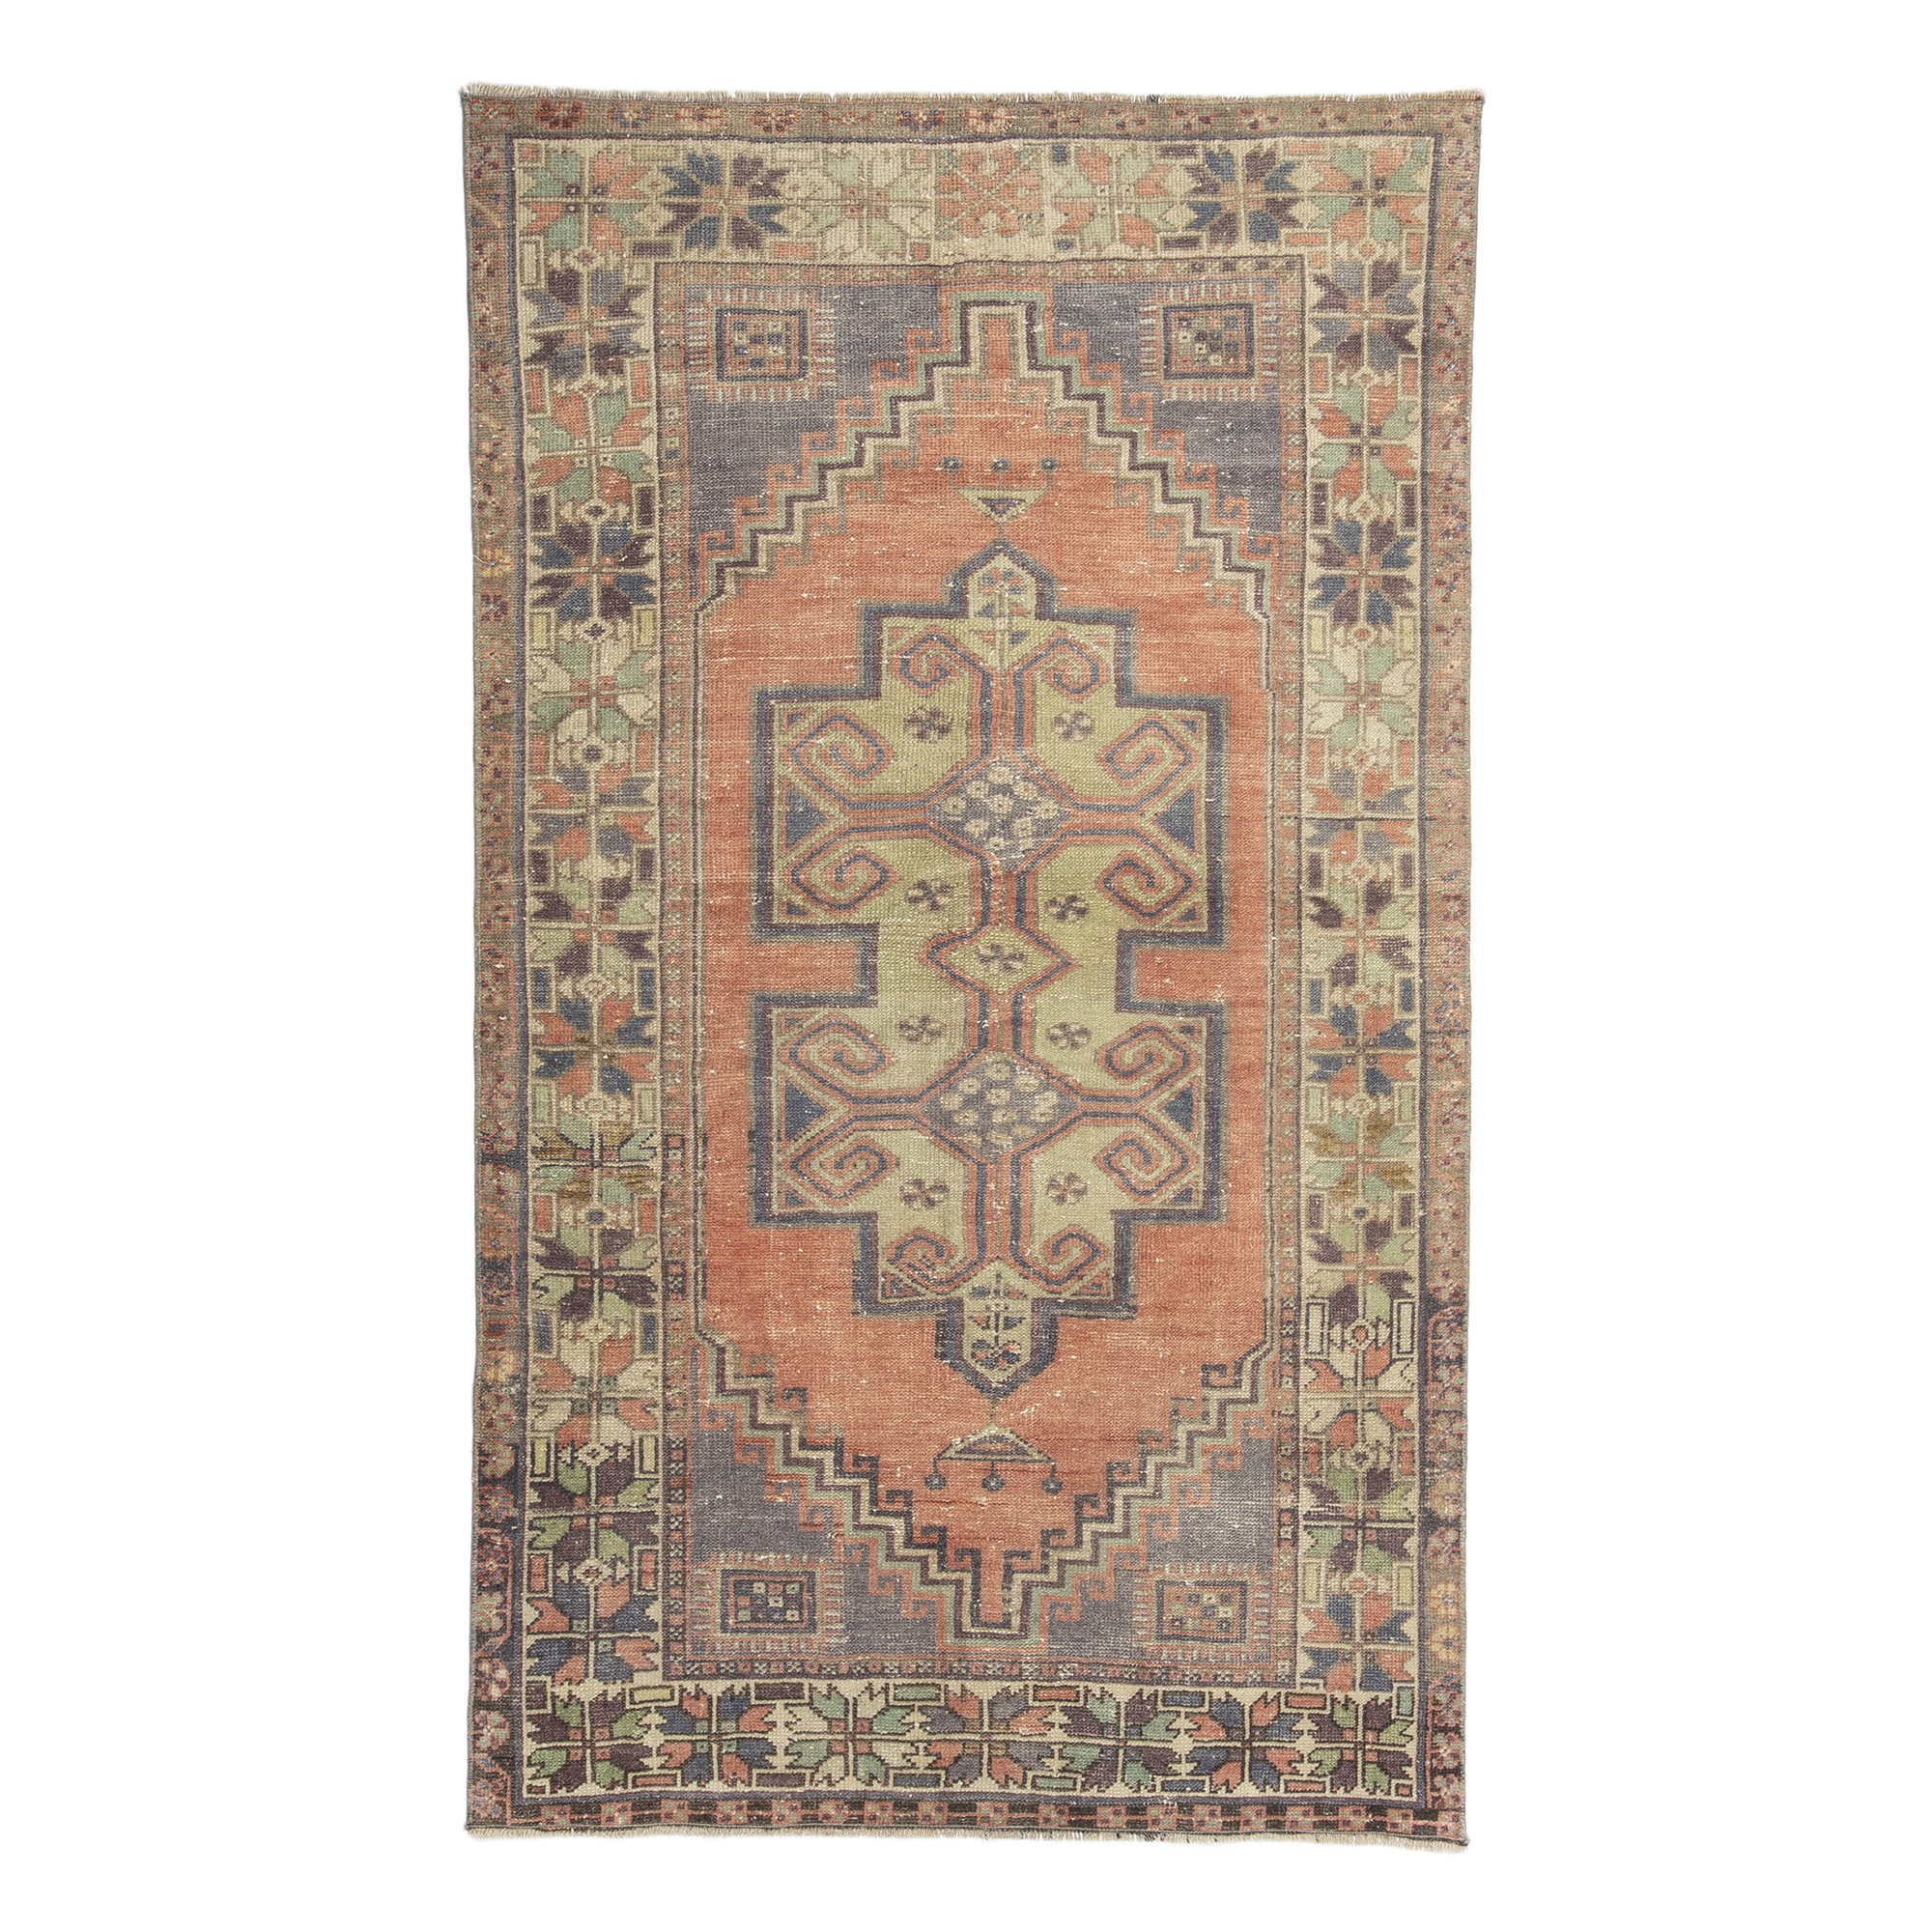 Turkish Carpet Rug Oushak 4x6 Feet 110,196 - Turkish Carpet Rug 